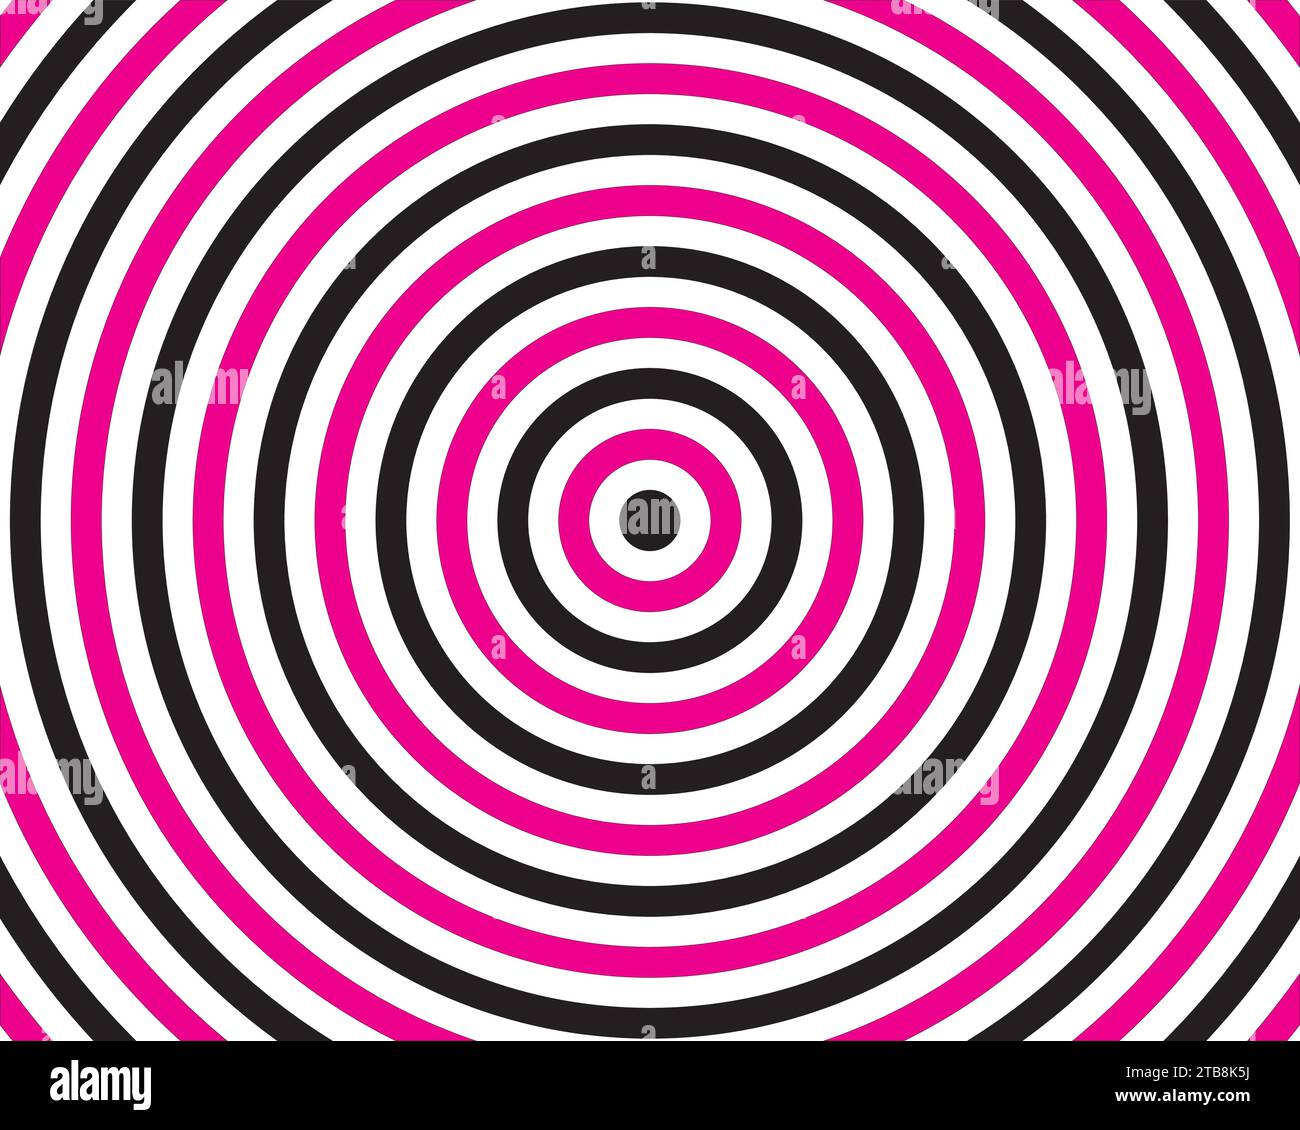 Schwarz mit rosa spiralförmigen optischen Illusion Hintergrund Vektor Illustration Stock Vektor